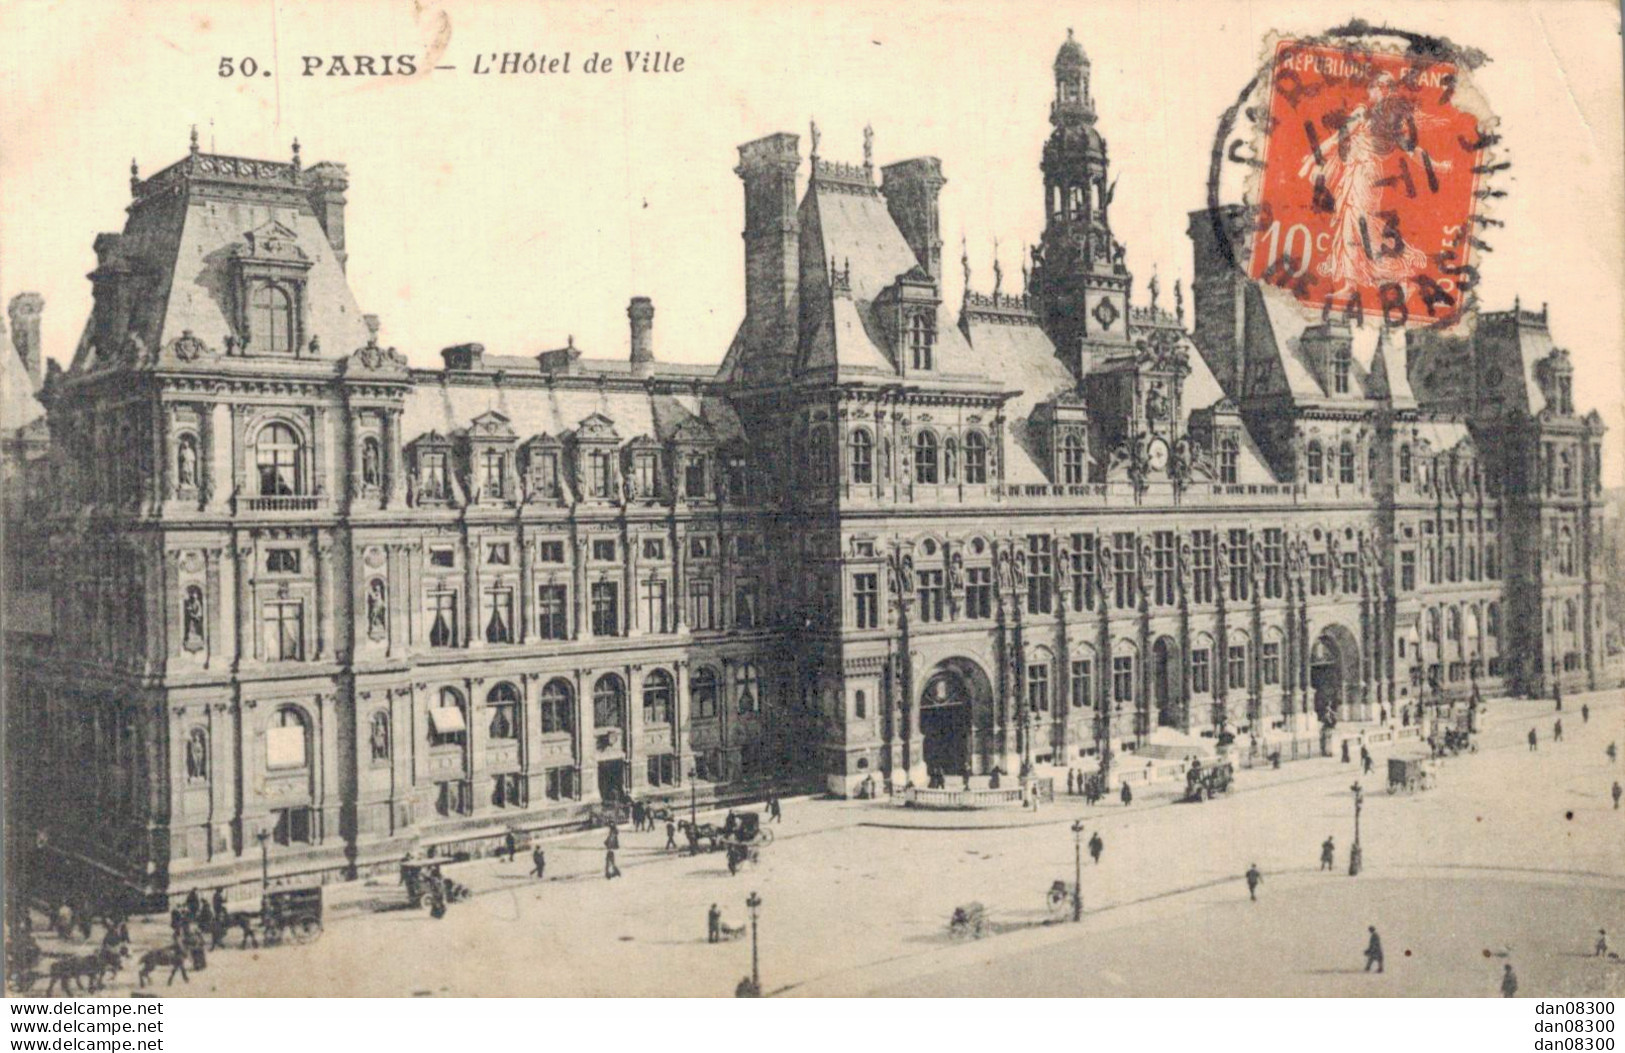 75 PARIS L'HOTEL DE VILLE - Sonstige Sehenswürdigkeiten